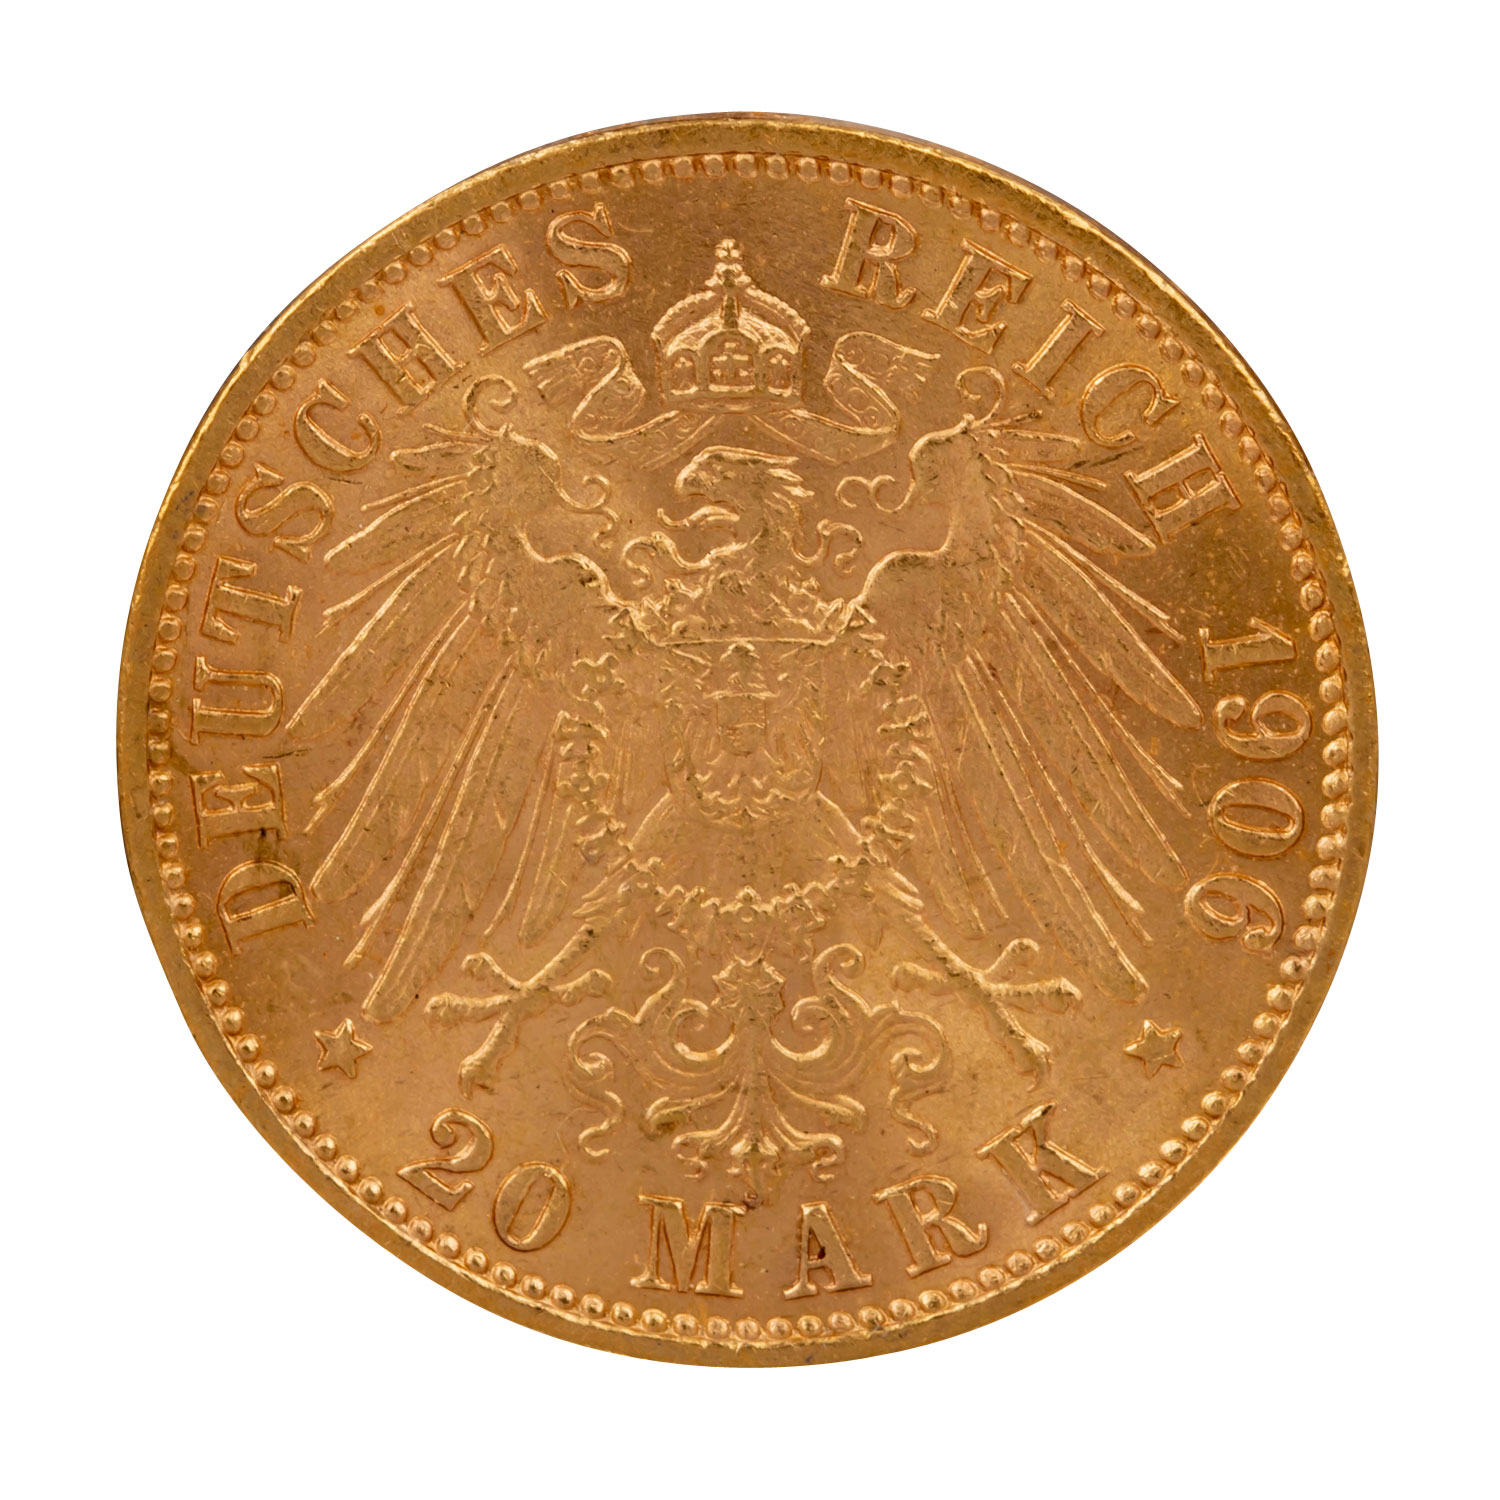 Freie Hansestadt Bremen/Gold - 20 Mark 1906/J, - Image 2 of 2